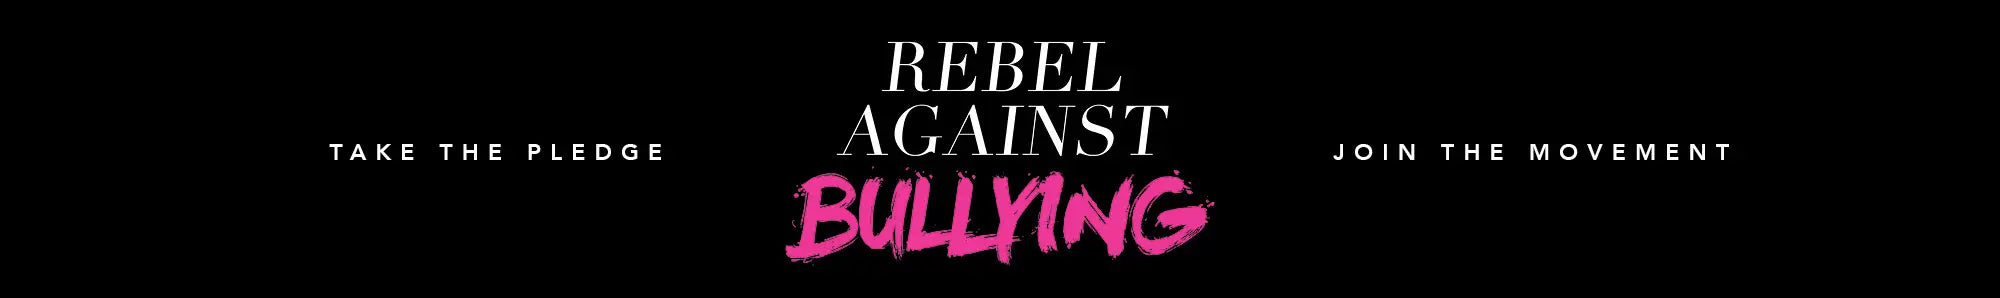 Rebel Against Bullying